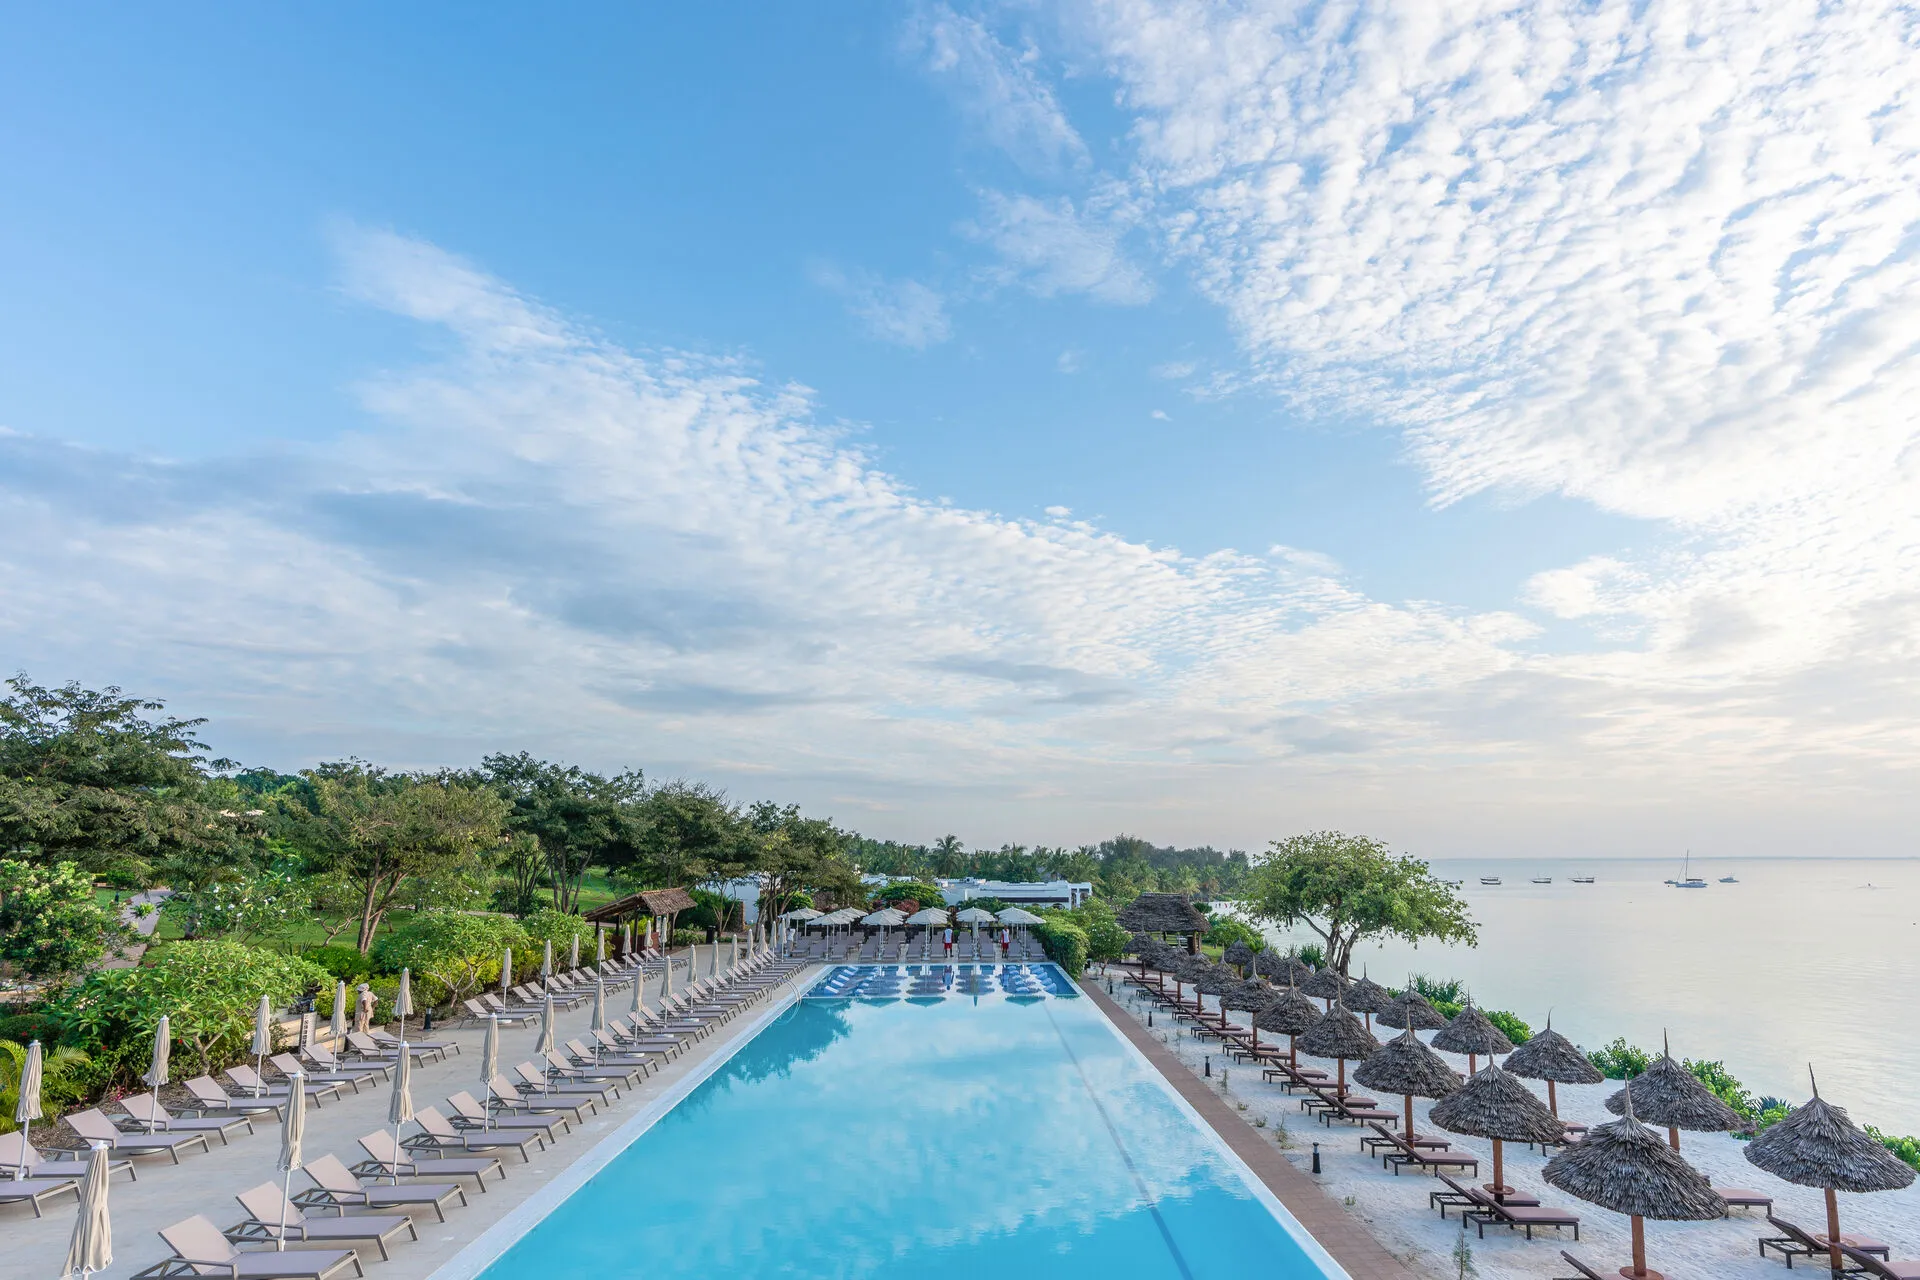 Tanzanie - Zanzibar - Hotel Riu Palace Zanzibar 5* - Adult Only transfert privé inclus